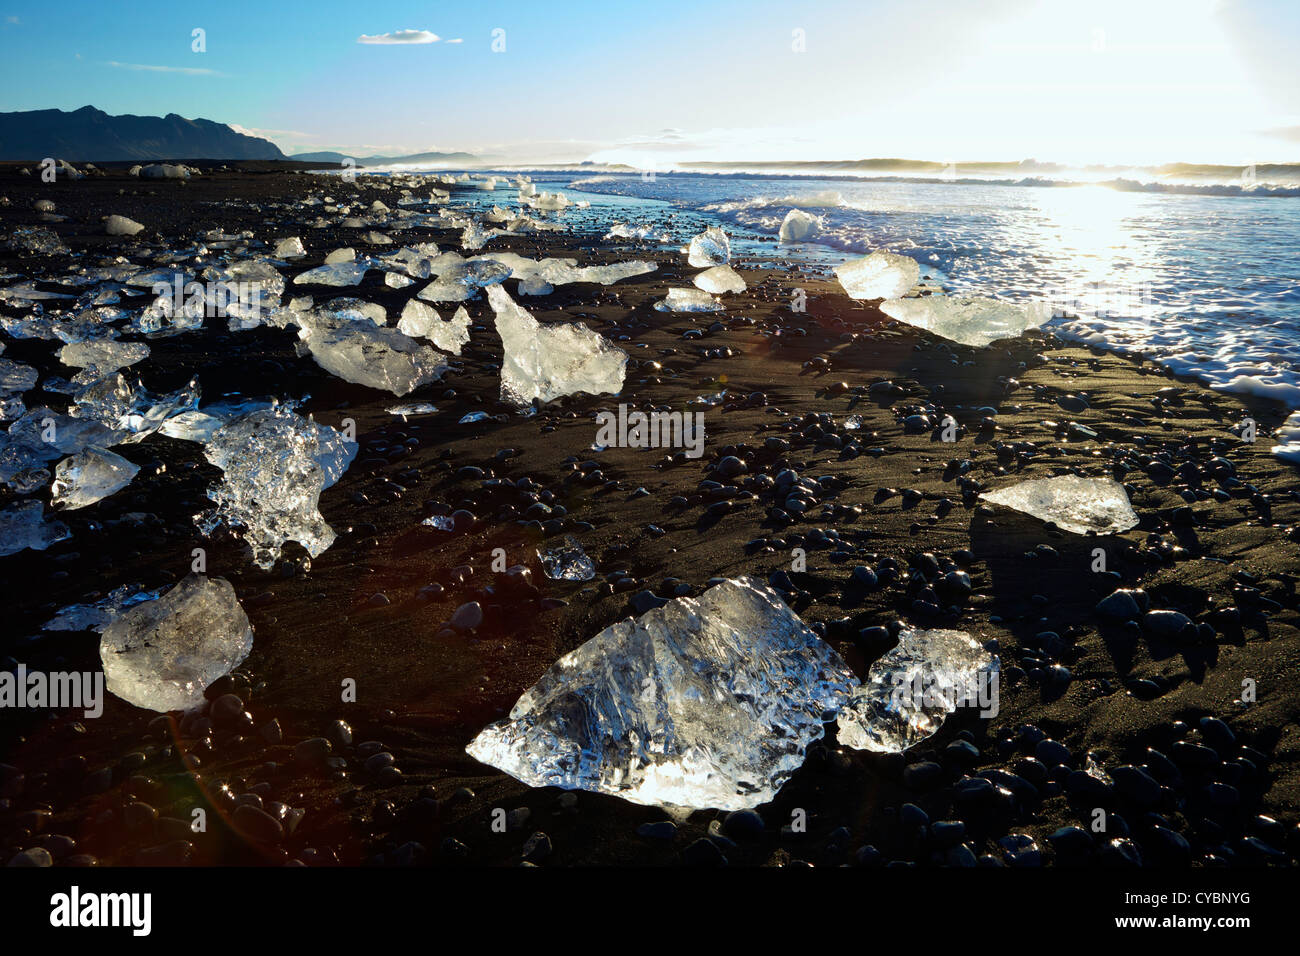 Los icebergs en la playa de arena volcánica en Jokulsarlon Islandia Foto de stock